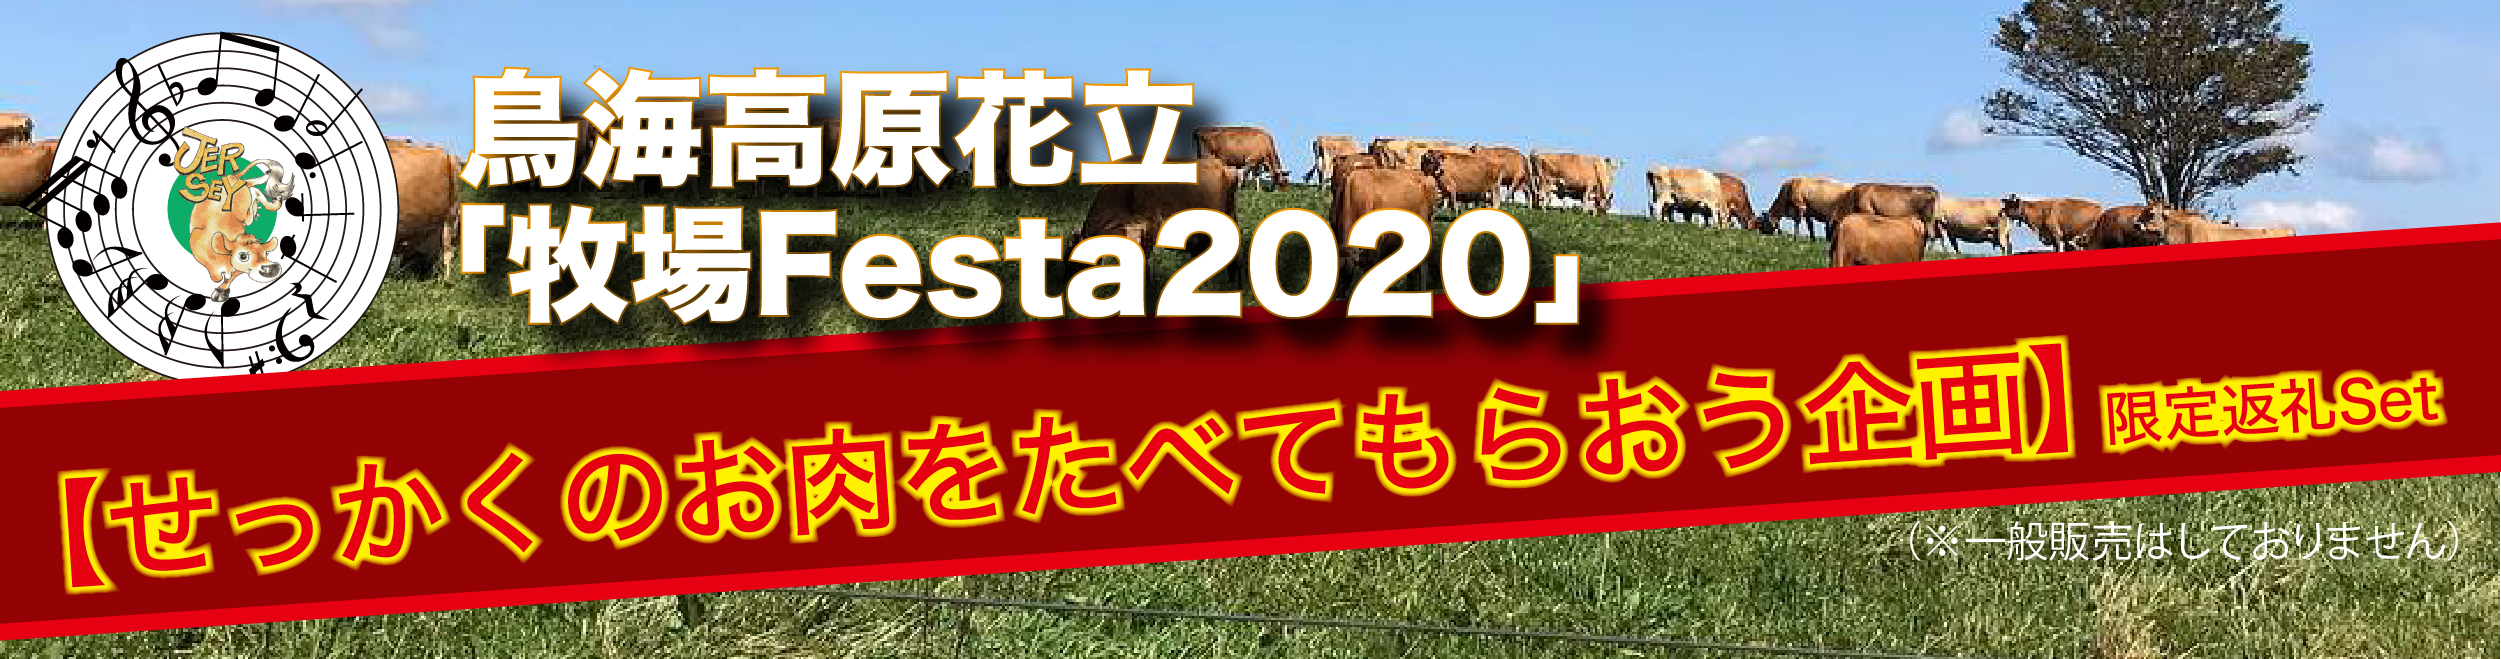 鳥海高原花立「牧場Festa2020」【せっかくのお肉をたべてもらう企画】限定返礼Set